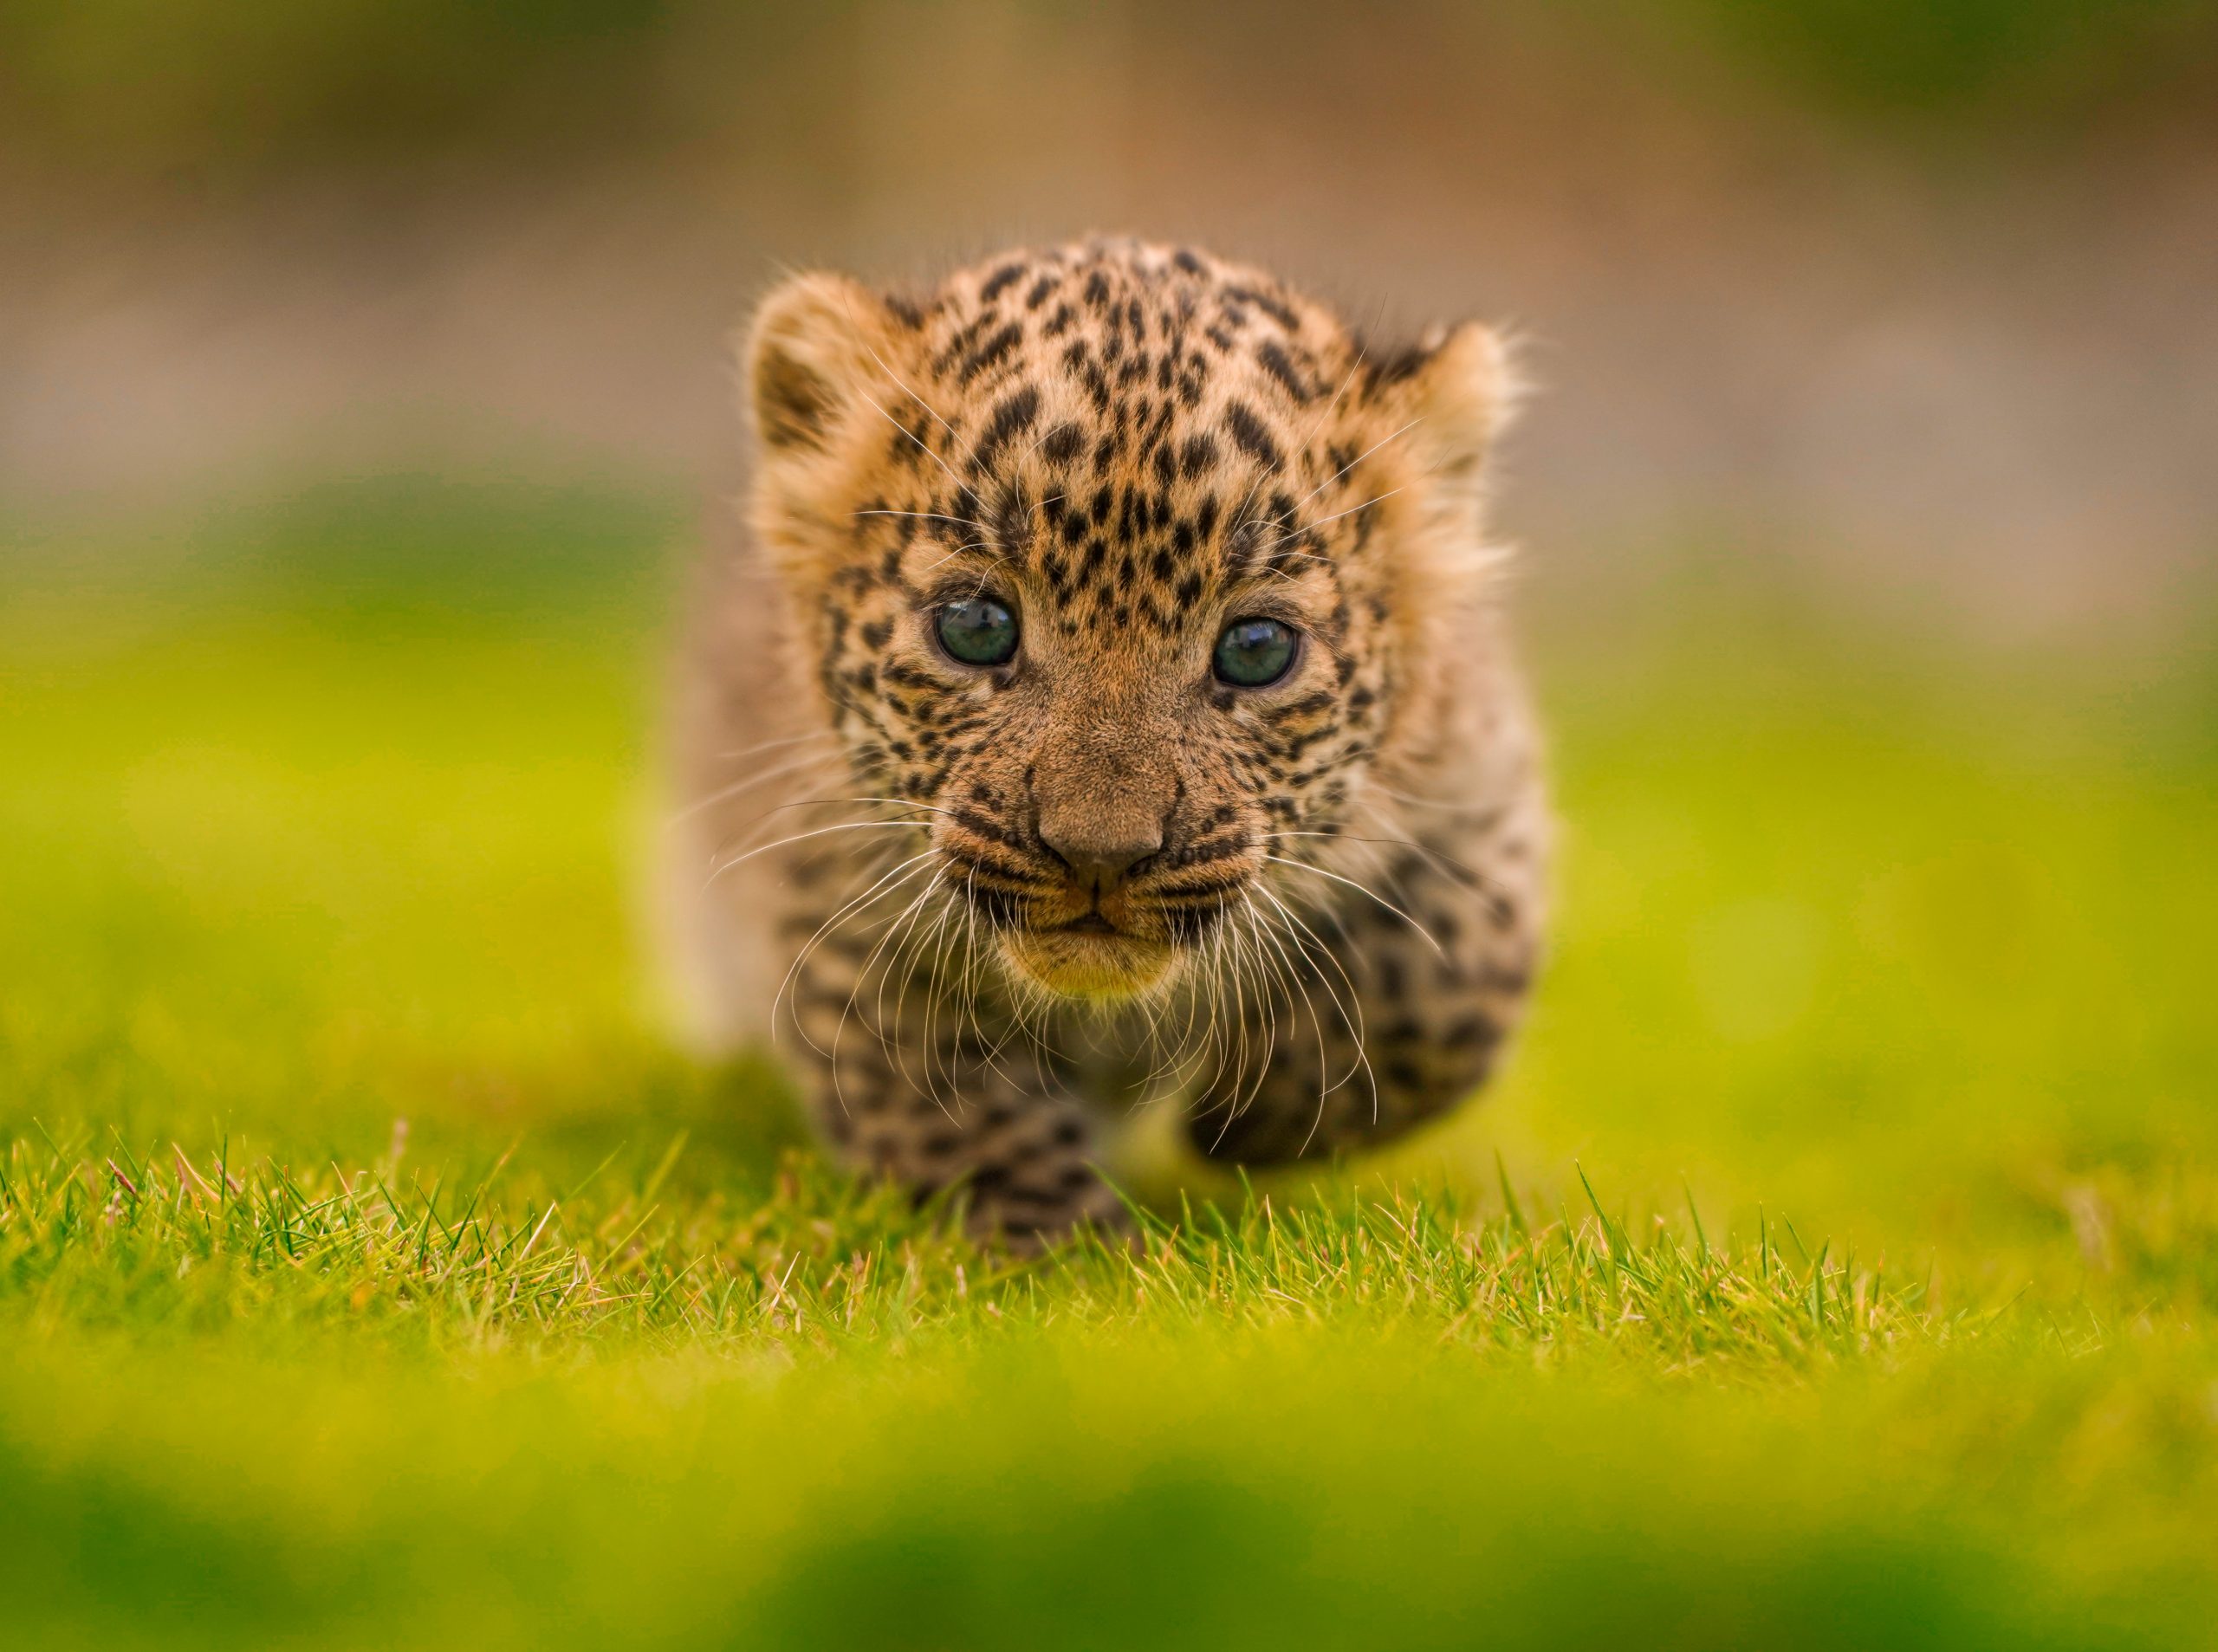 leopard cubs